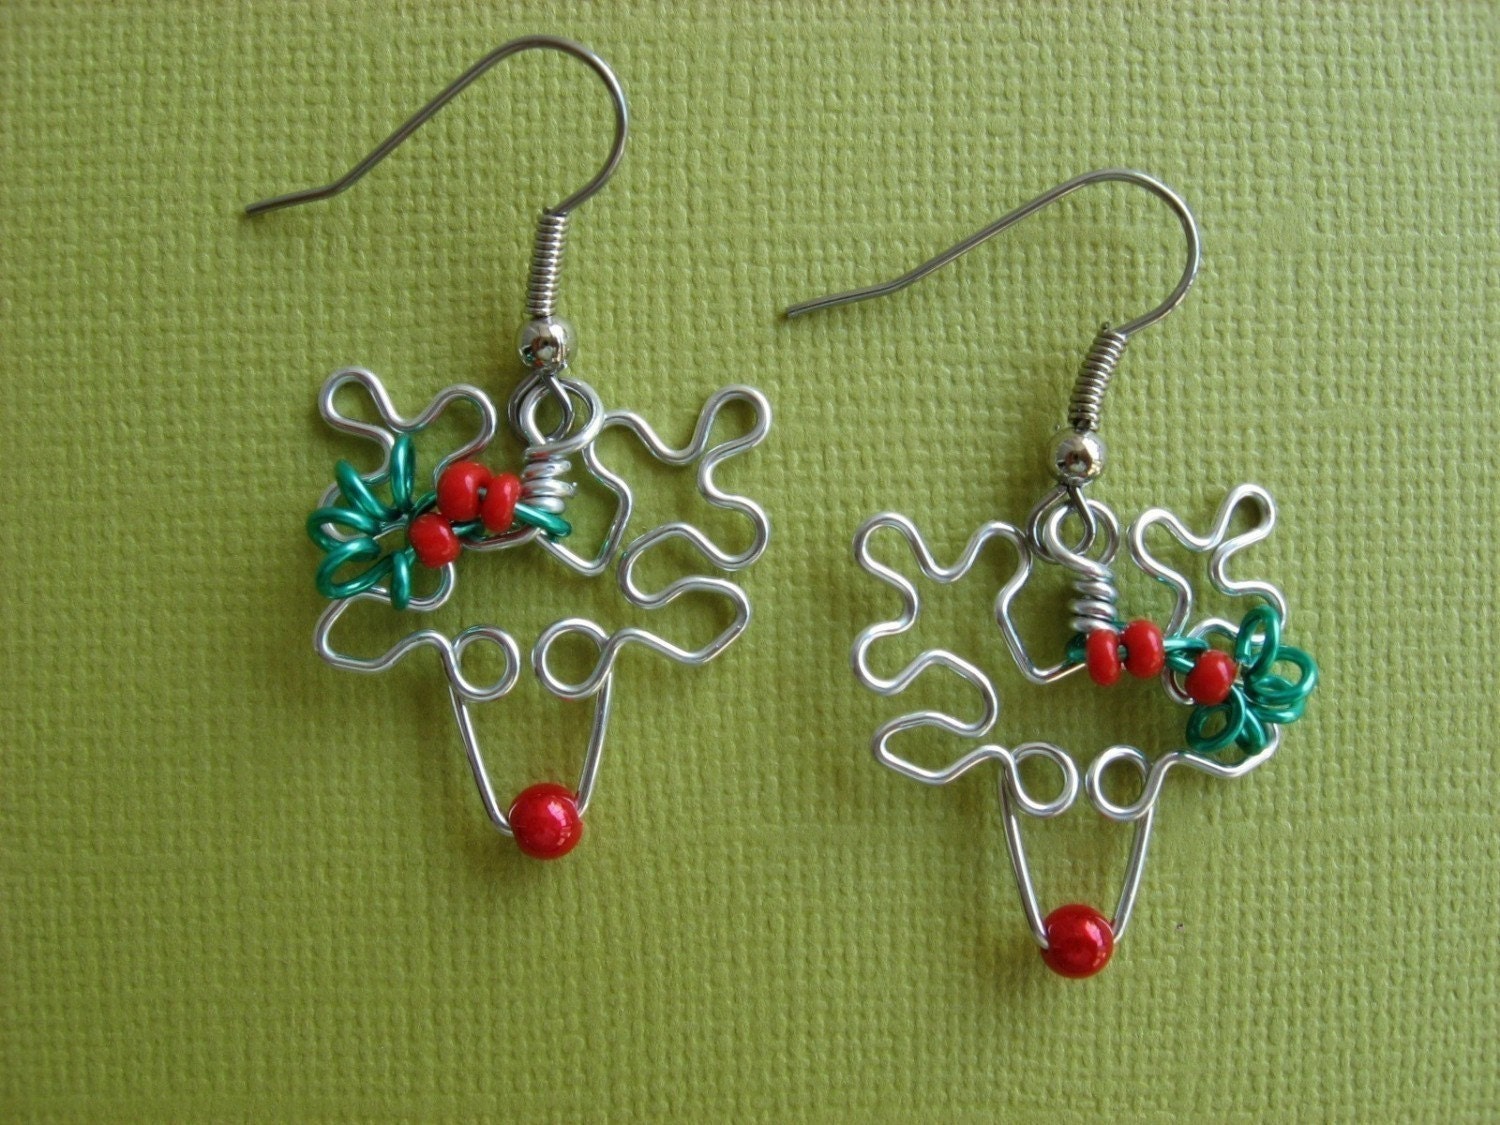 Mr. Rudolph reindeer earrings